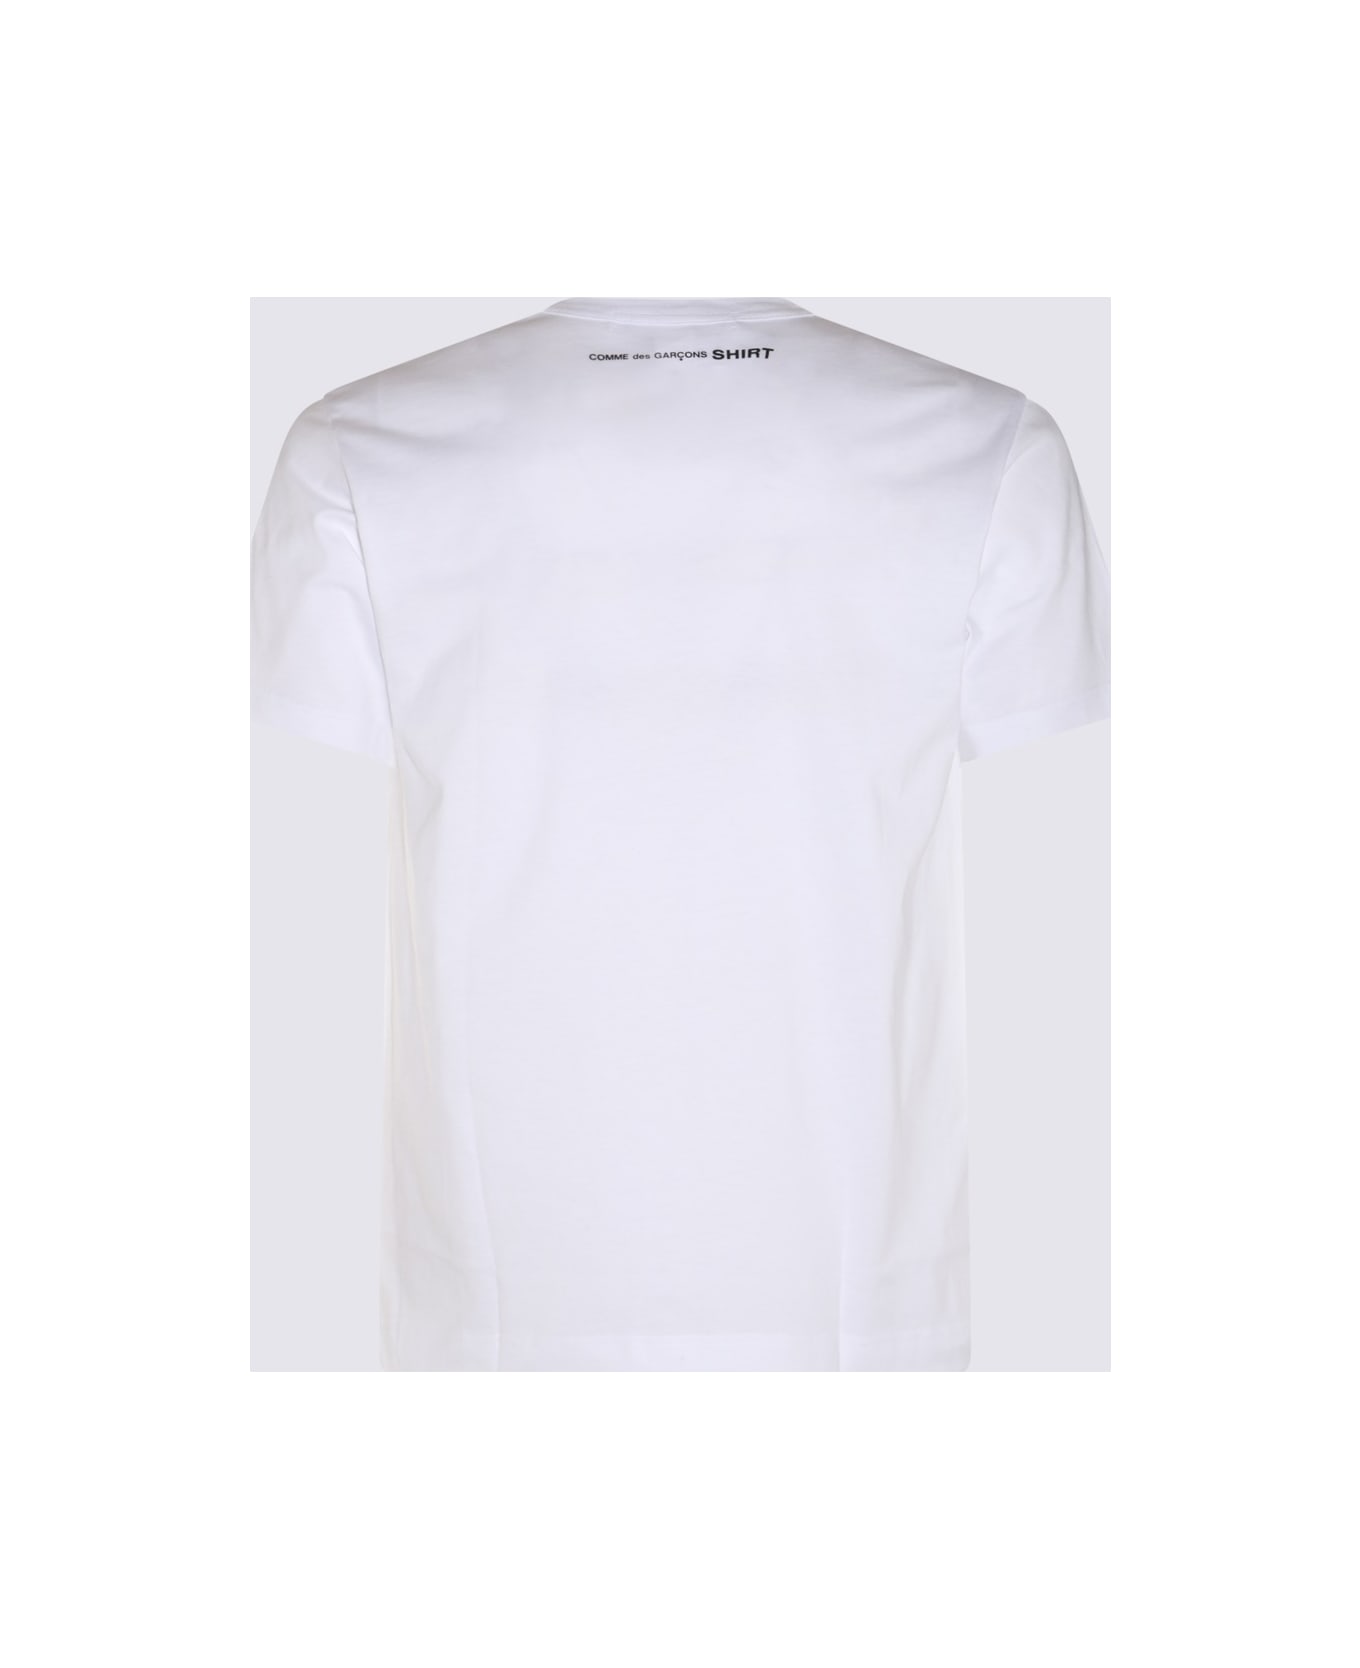 Comme des Garçons White Cotton T-shirt - TOP GREY シャツ